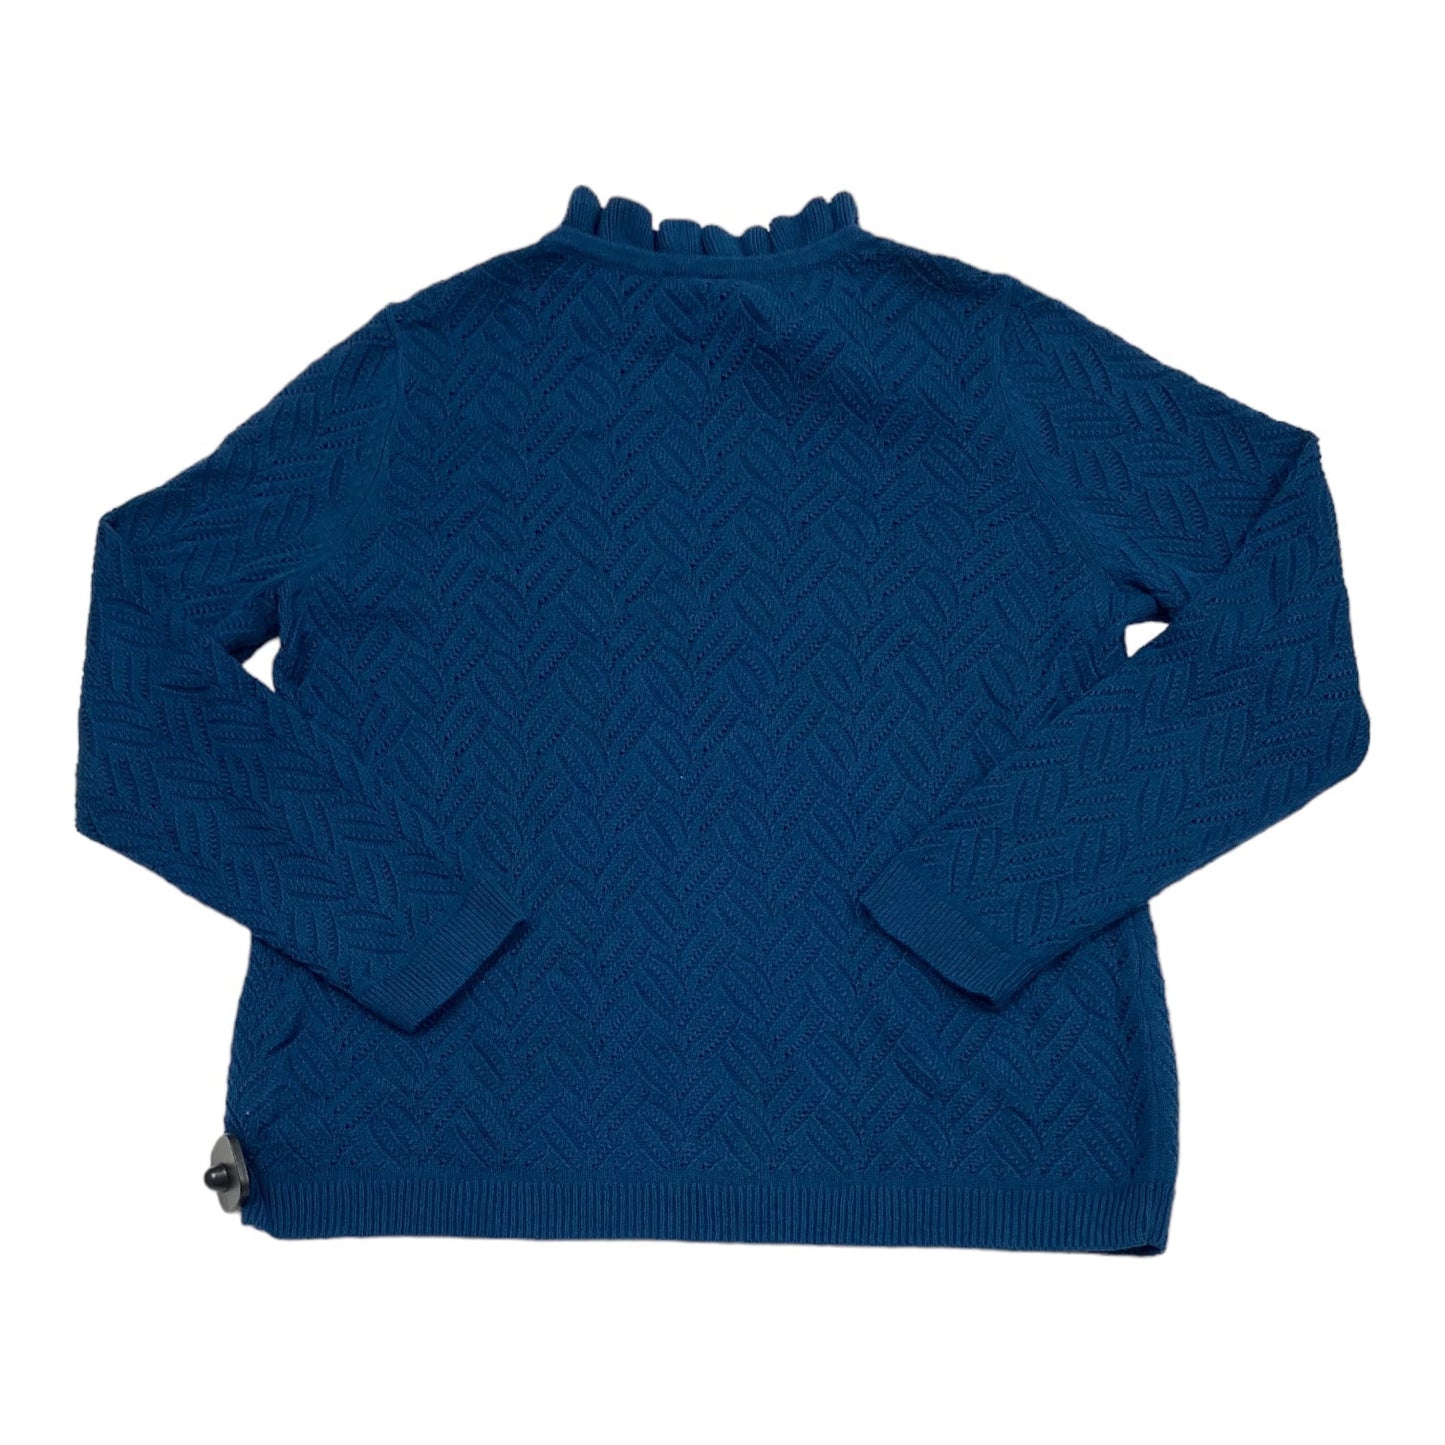 Grey & Tan Sweater Talbots, Size Xl